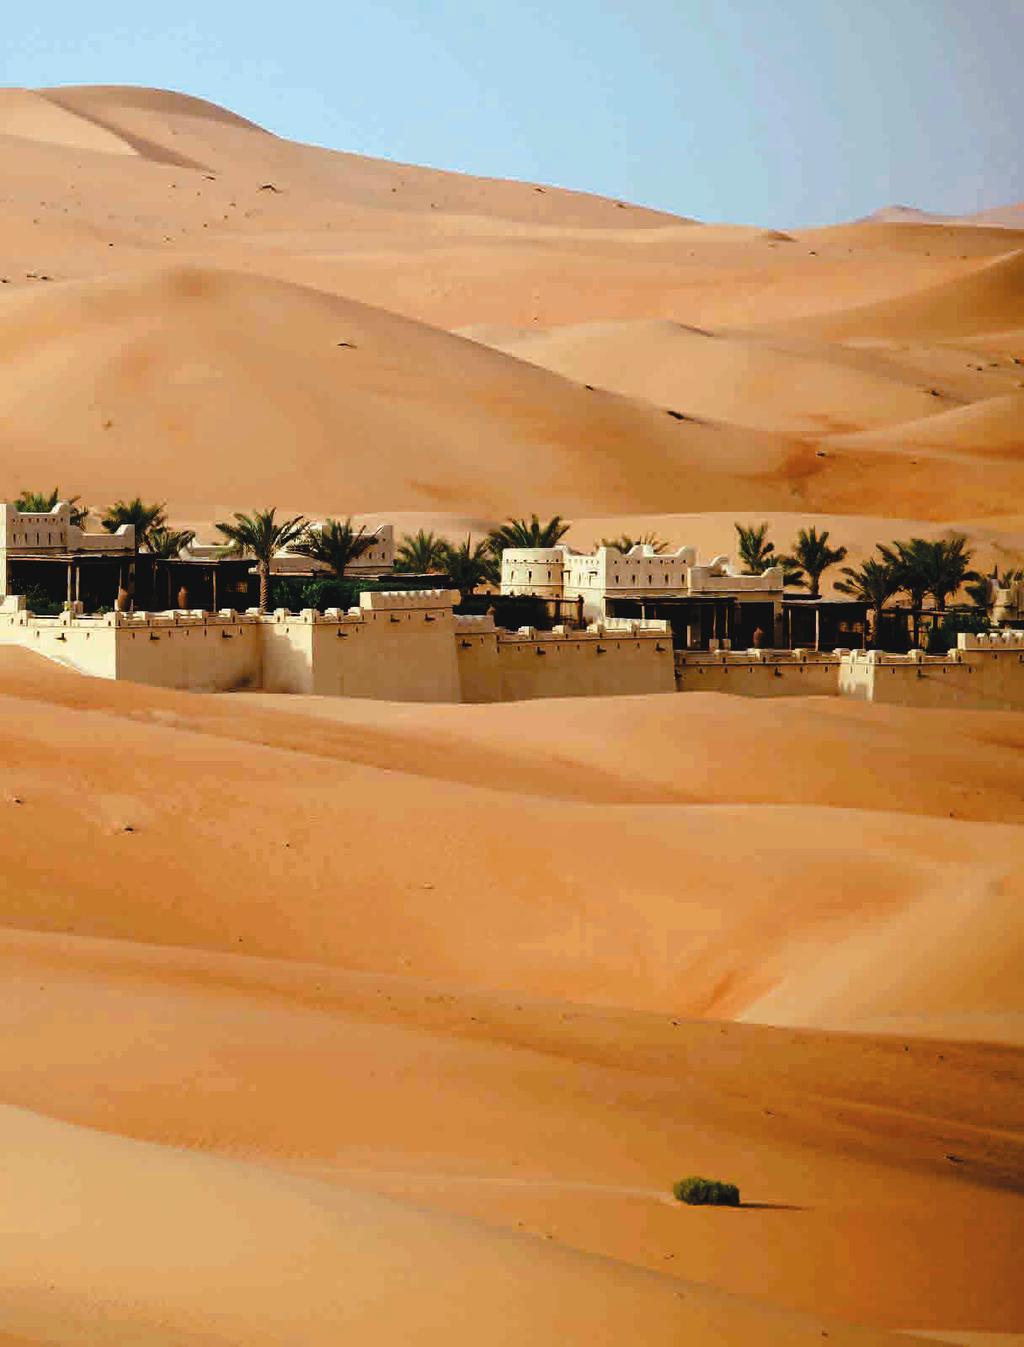 IMPRESSIONEN 18 19 Die größte Sandwüste der Welt Ein Ausflug von der Liwa-Oase in die Rub al-khali, die größte Sandwüste der Welt, ist ein überwältigendes Erlebnis.